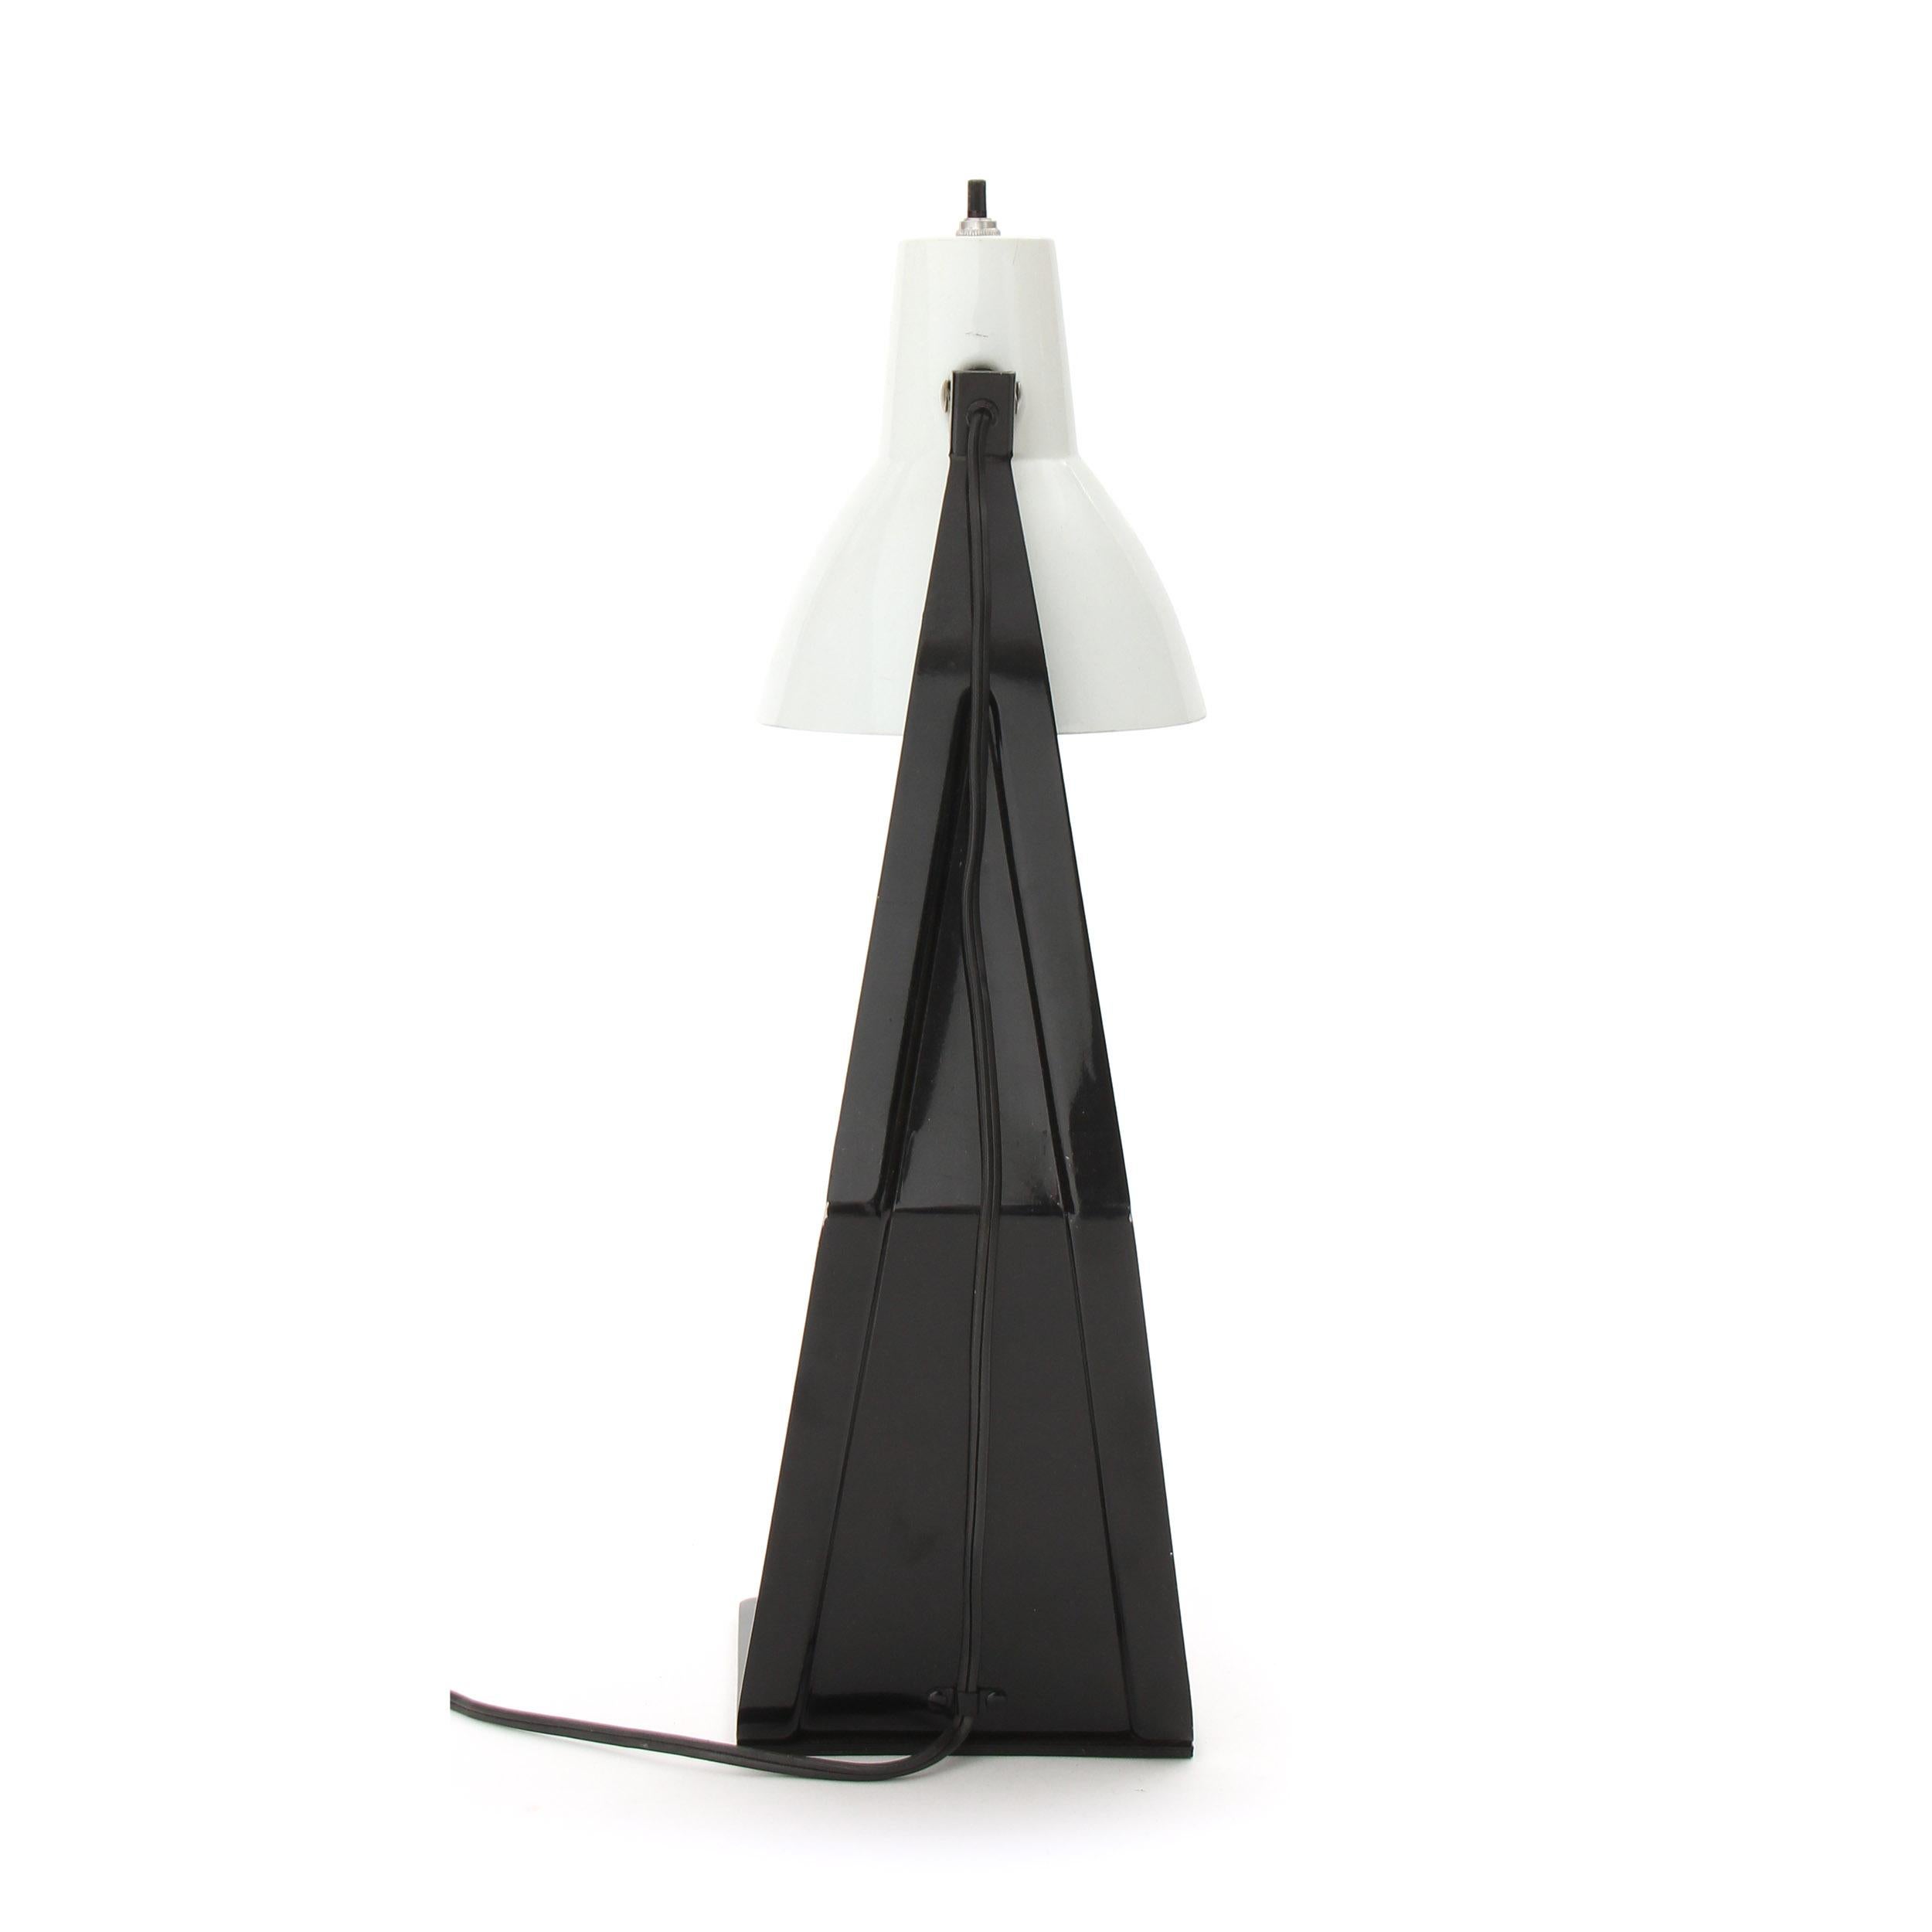 Lampe de bureau / de table constituée d'une pièce de métal singulière estampée, découpée et pliée, peinte en noir avec un abat-jour pivotant.